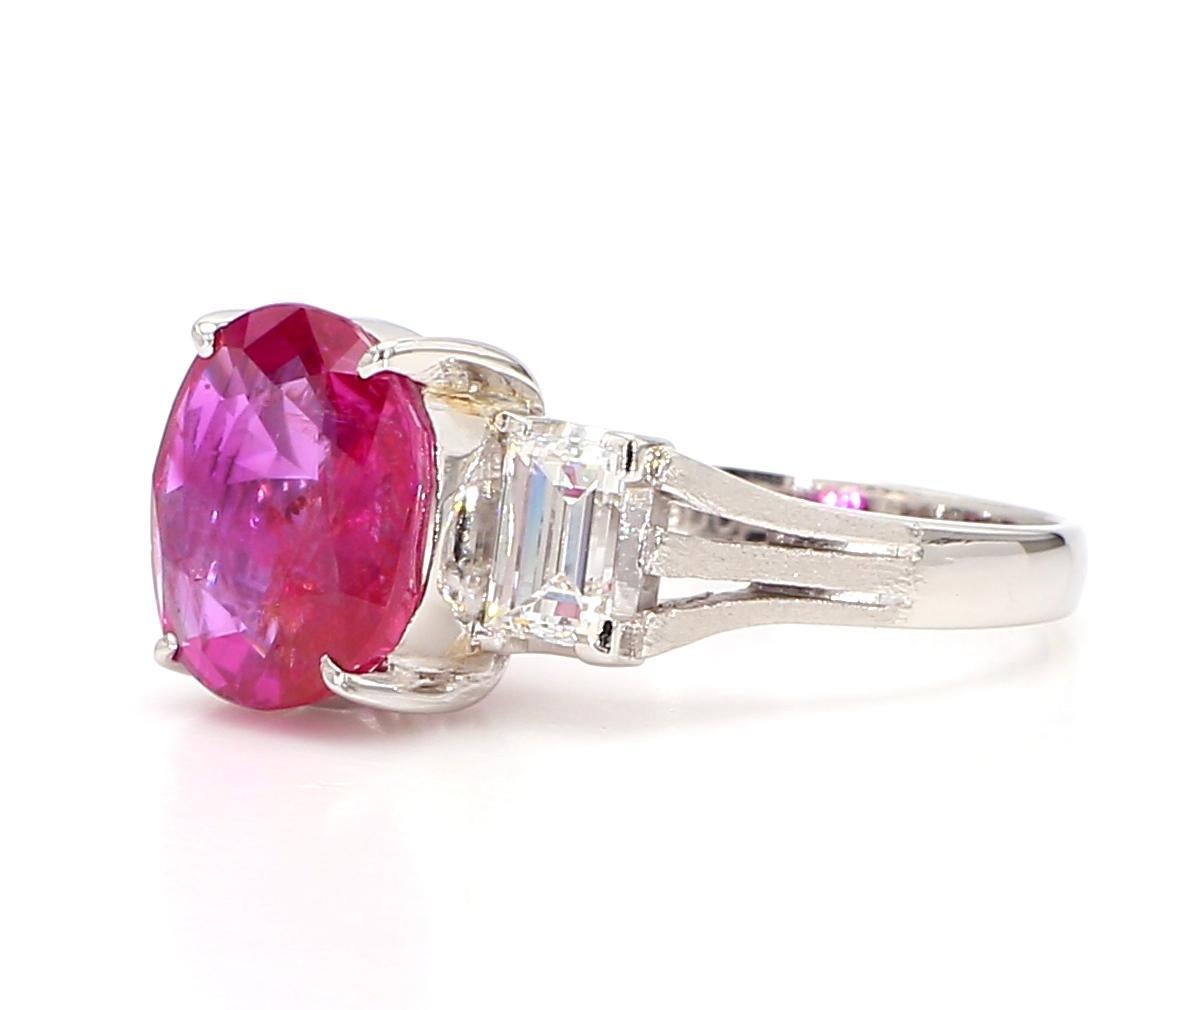 Dieser atemberaubende Ring mit 3 Karat Rubinen und Diamanten ist ein echtes Statement, das Eleganz und Luxus ausstrahlt. Das Herzstück des Rings ist ein leuchtender 3-Karat-Rubin im Ovalschliff, der von einem Halo aus funkelnden Diamanten im